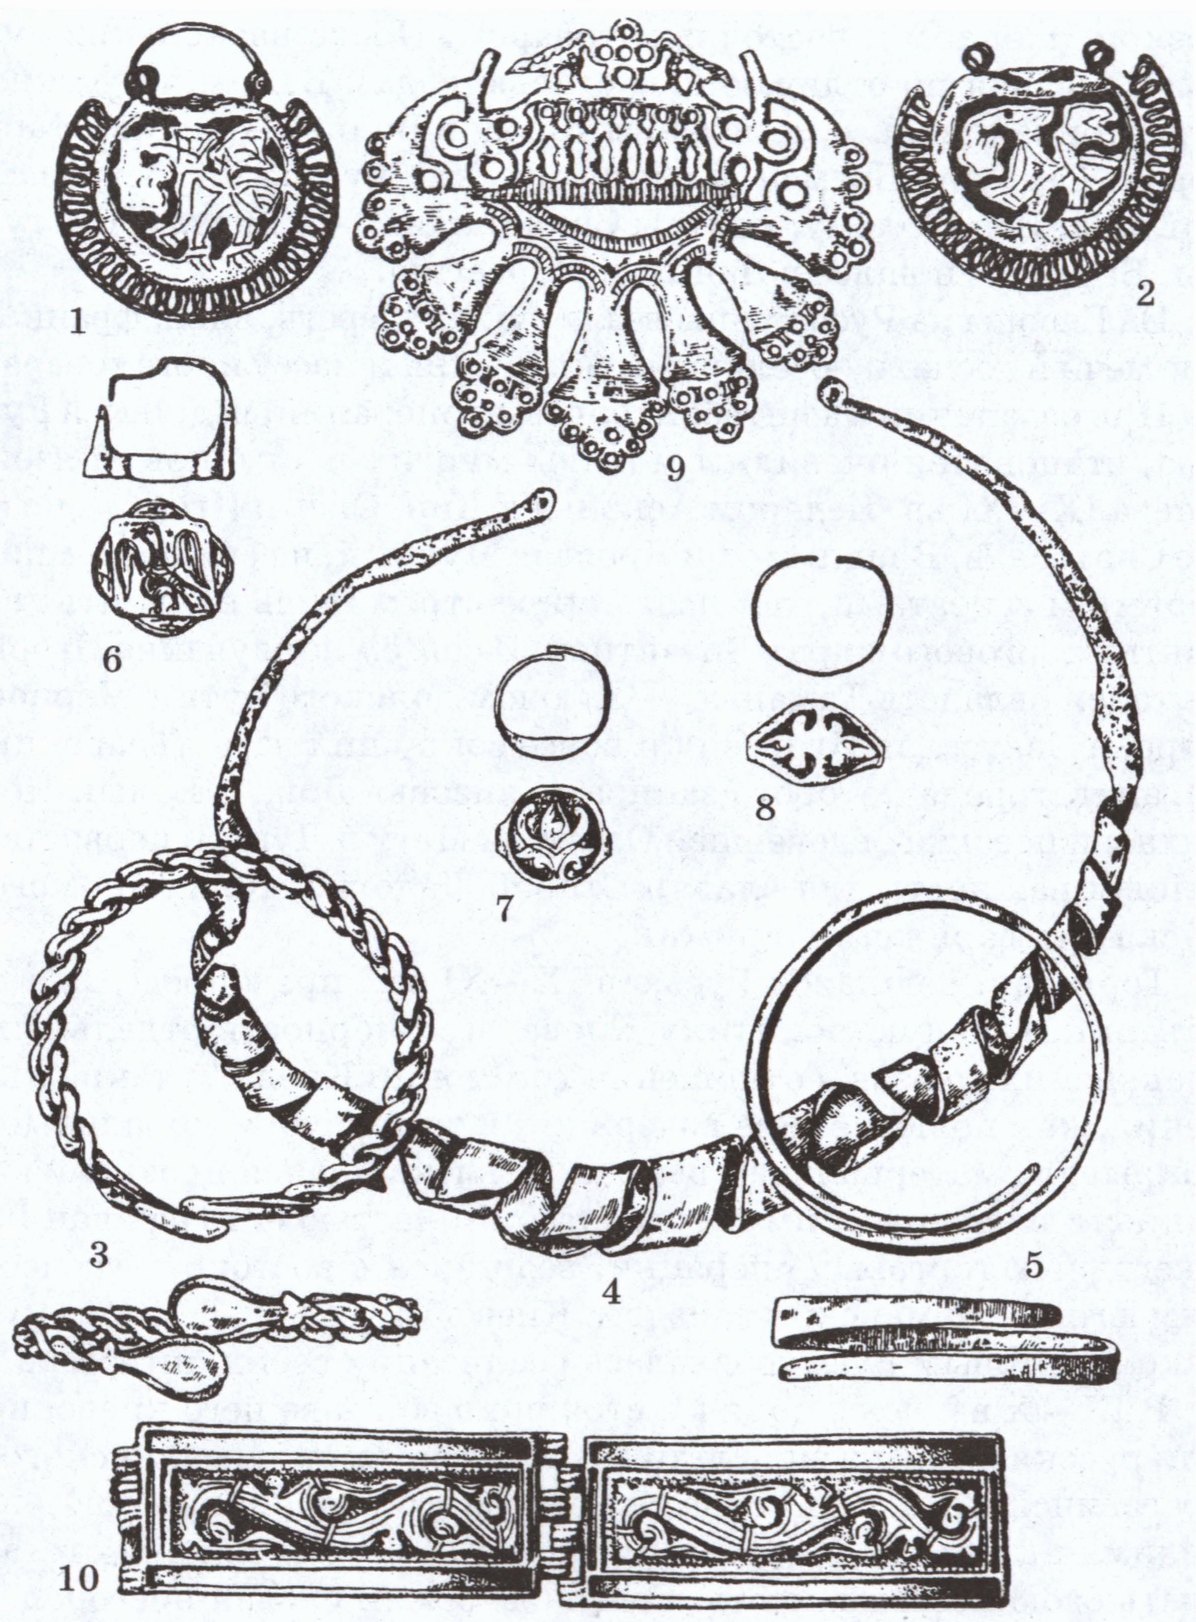 Клады, зарытые в земле вятичей: 1—2 — колты; 3, 5, 10 — браслеты; 4 — шейная гривна; 6—8 — перстни; 9 — височное кольцо